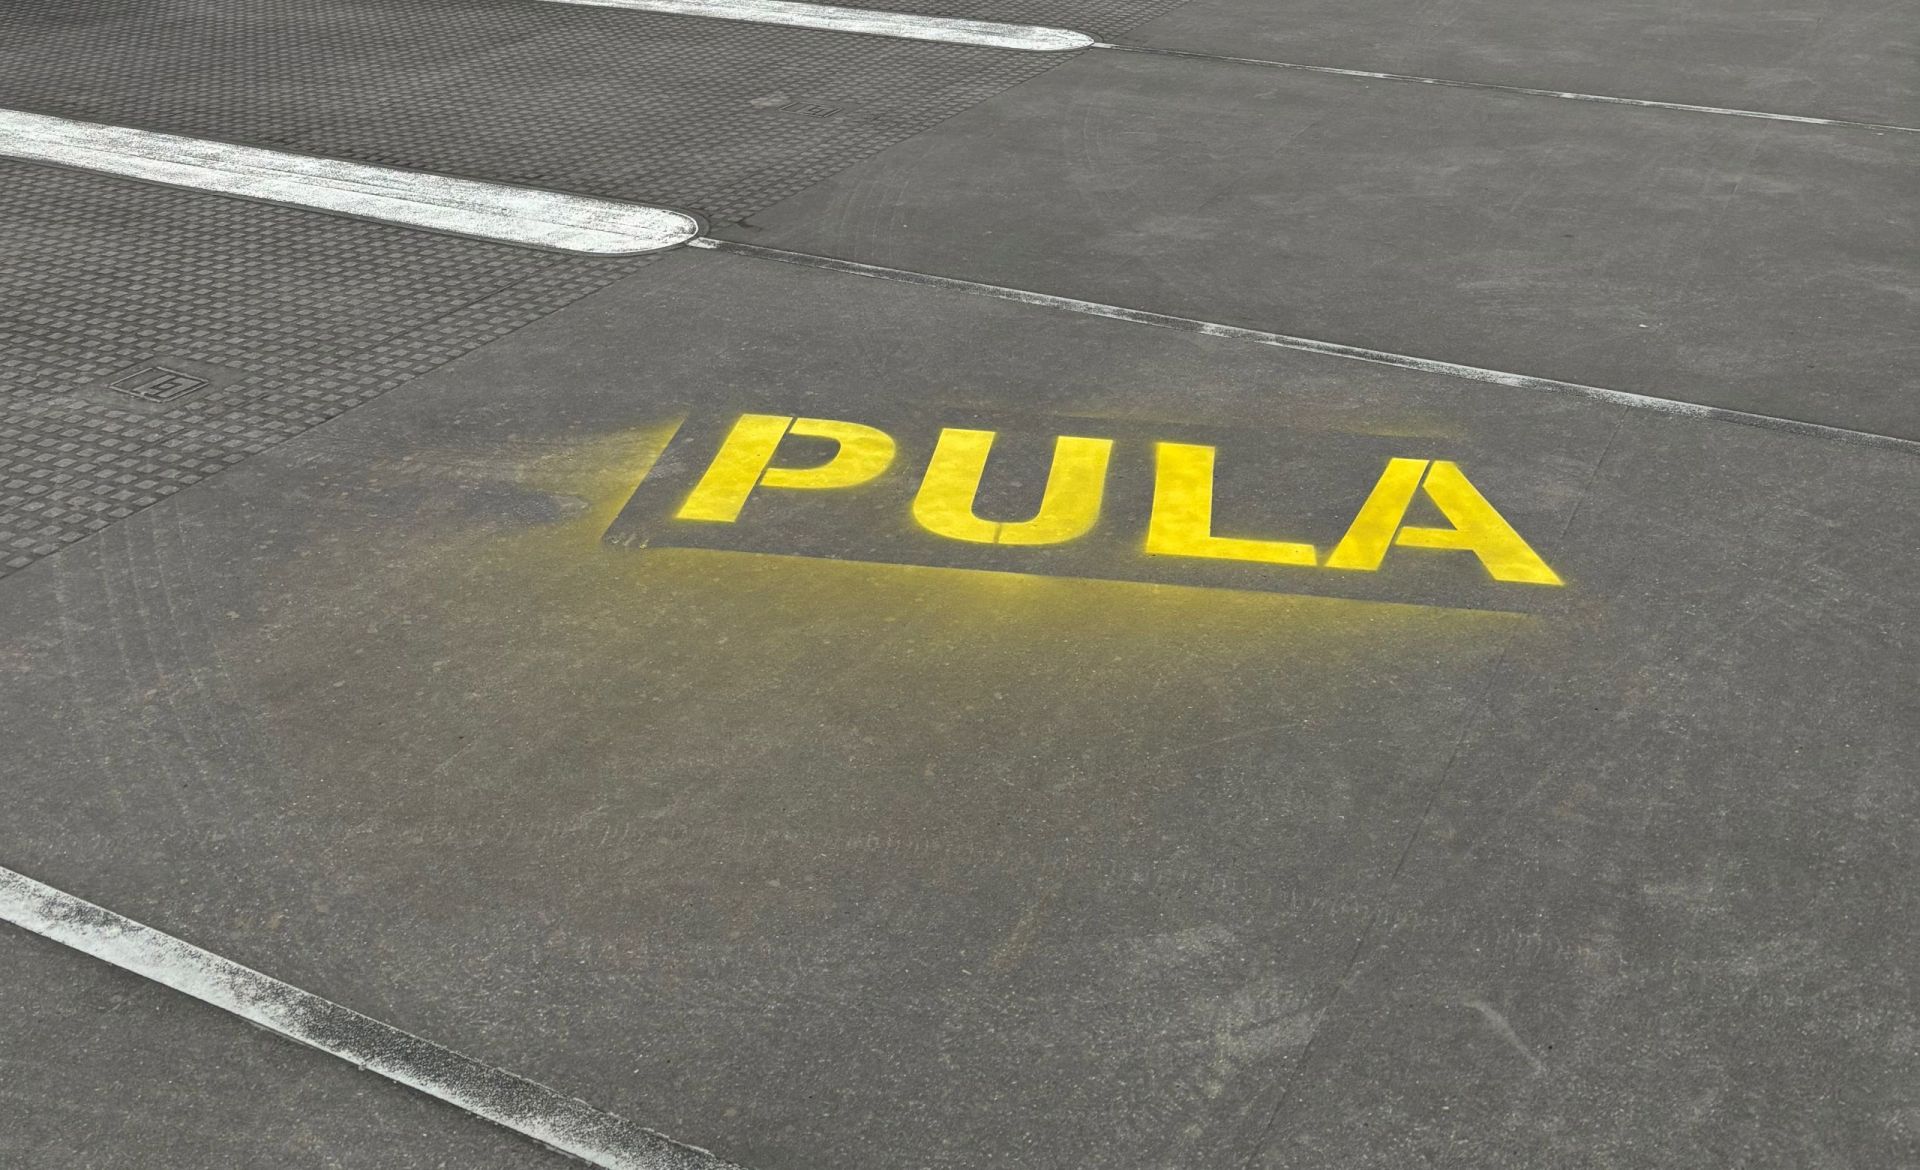 Auf dem gepflasterten Boden eines Parkhauses ist der Schriftzug Pula mit Kreidesprühfarbe zu lesen